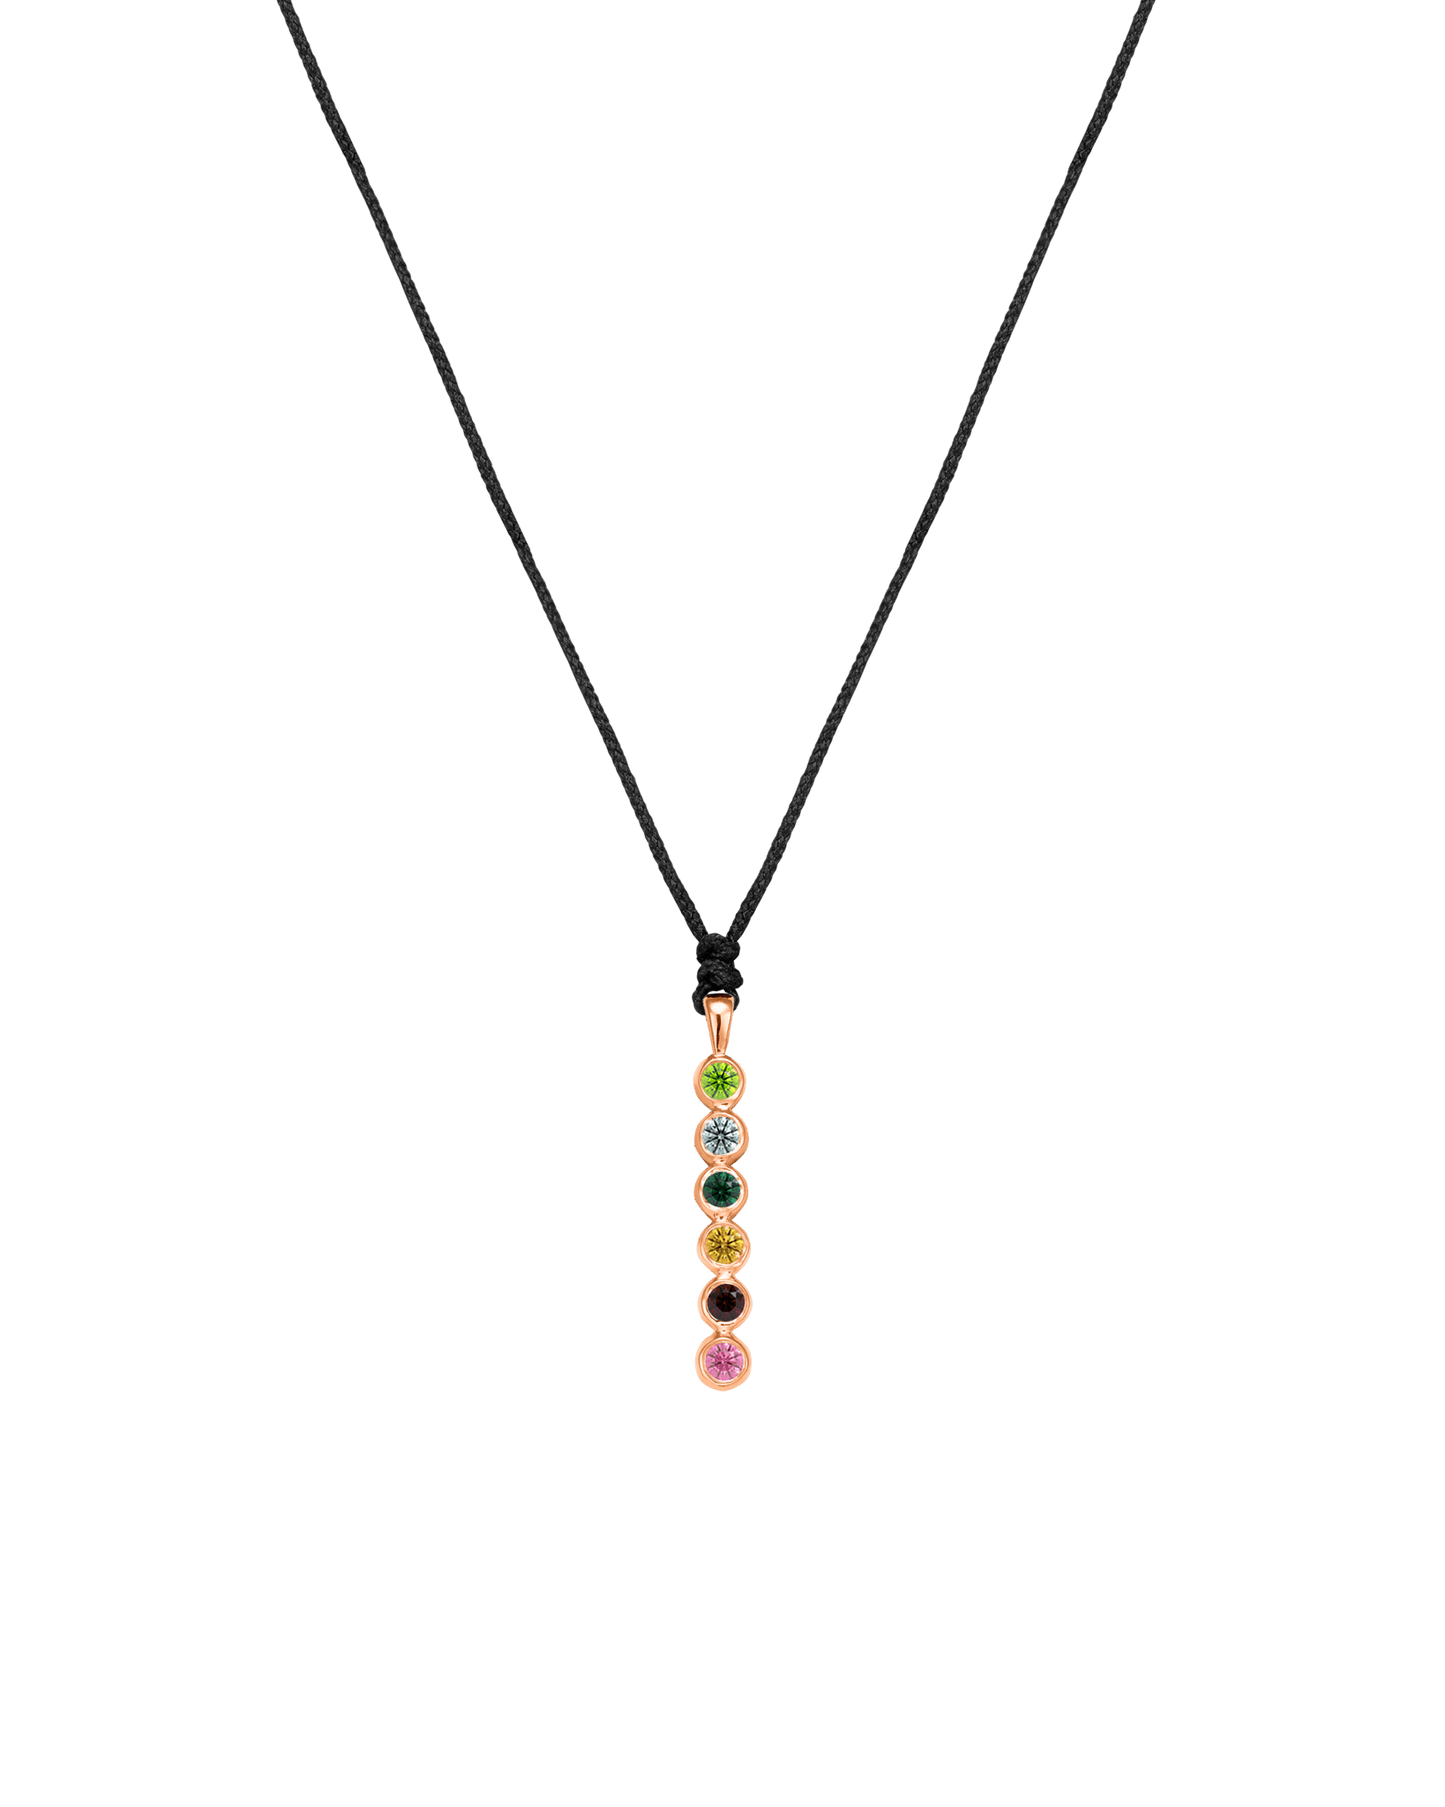 The Birthstones Bar Necklace - 14K Rose Gold Necklaces 14K Solid Gold Black 2 